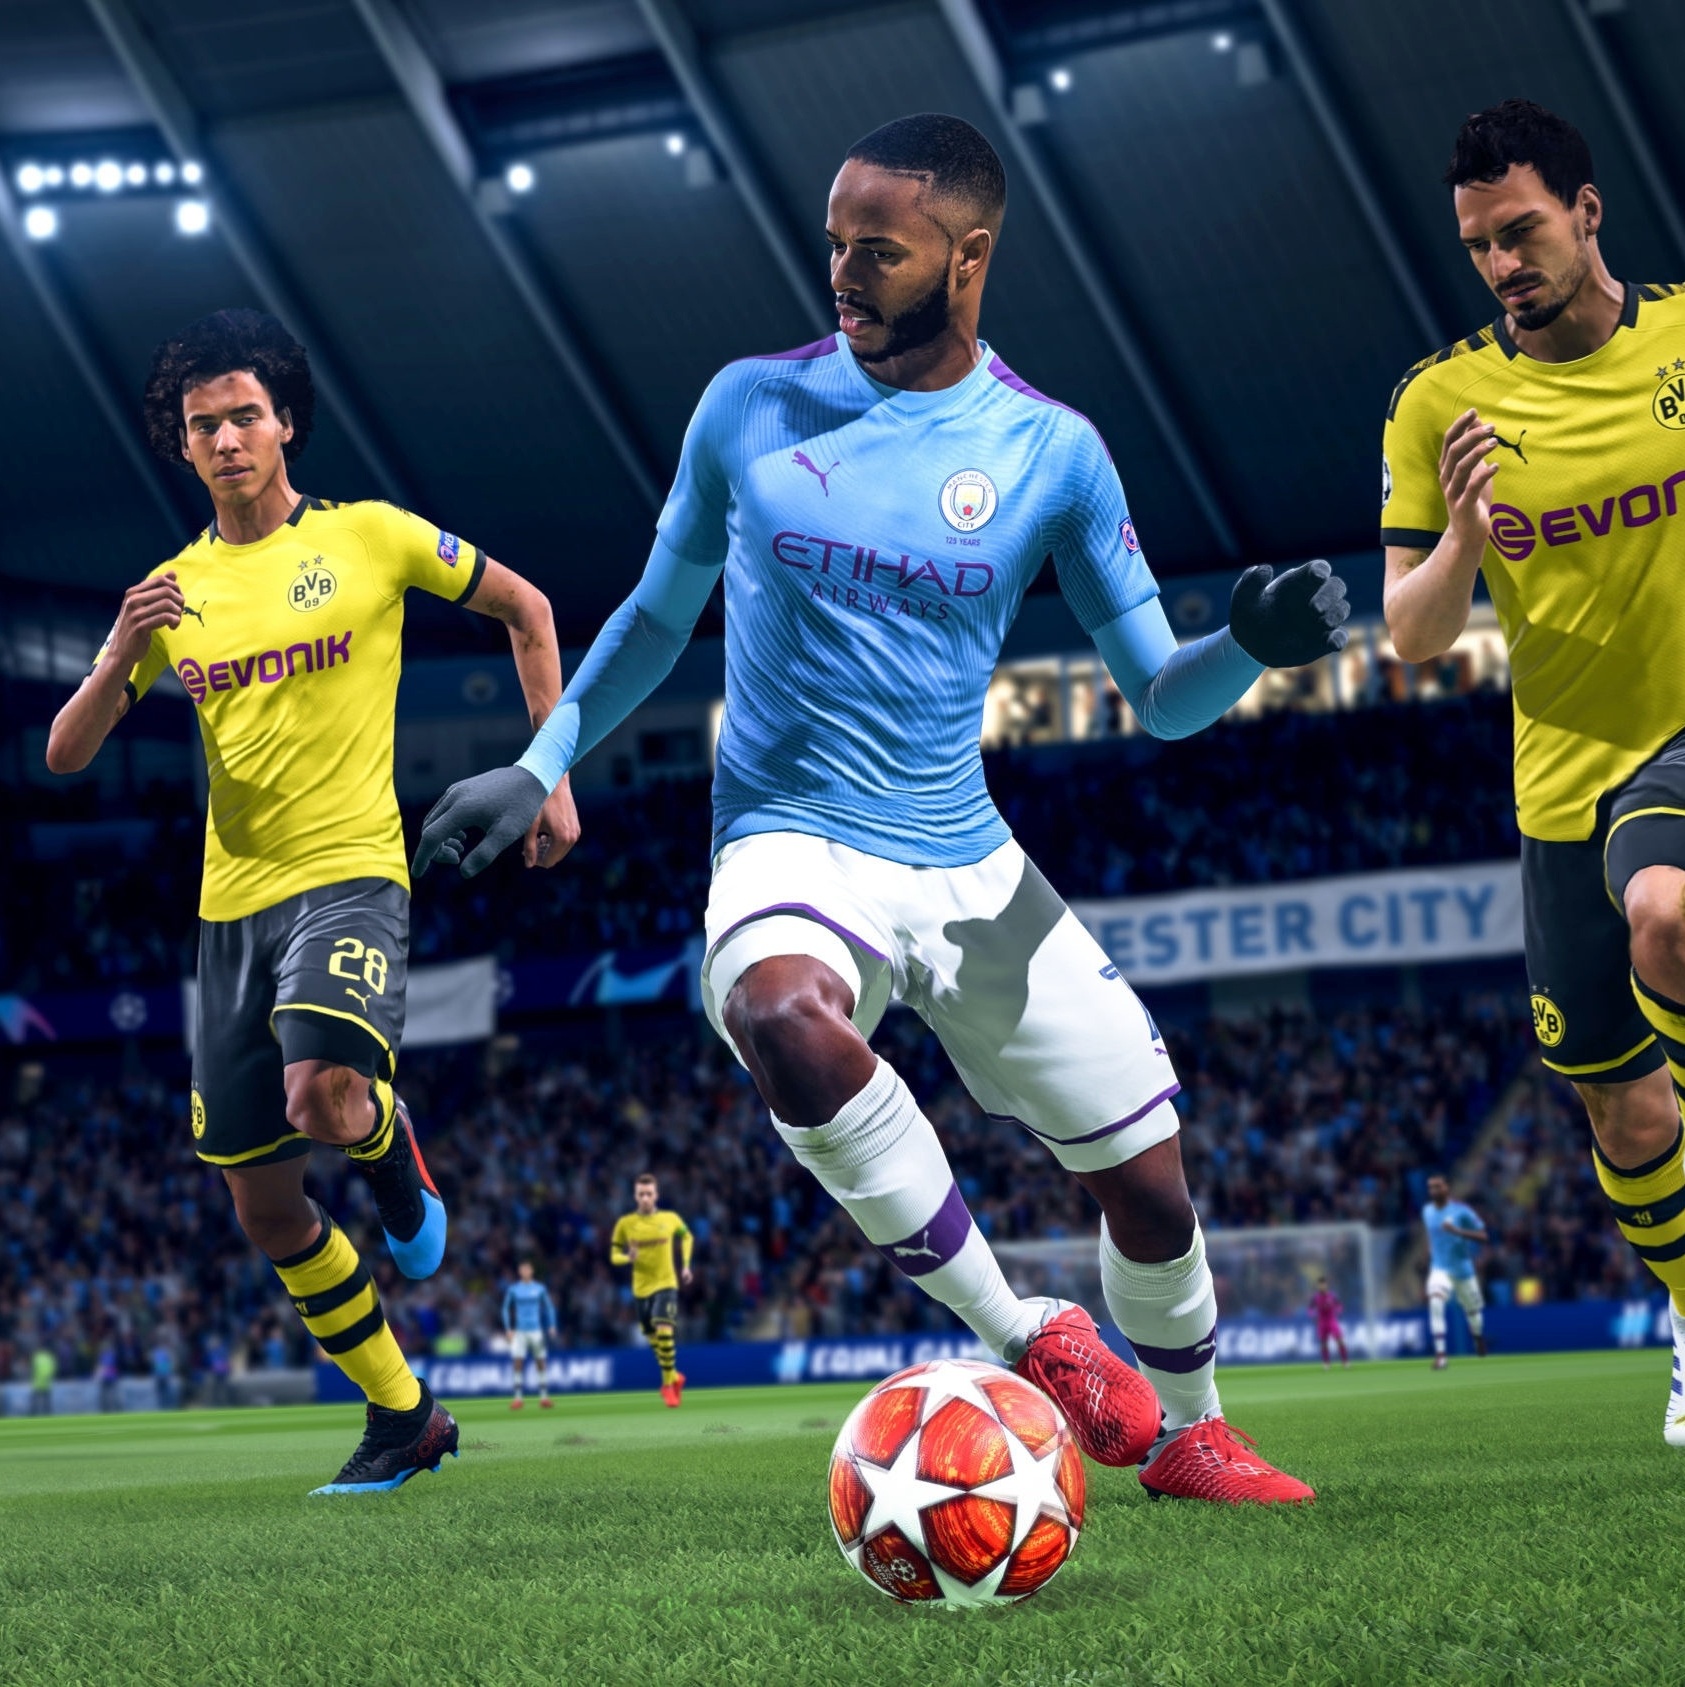 EA Sports FC 24: veja perguntas e respostas sobre o jogo sucessor